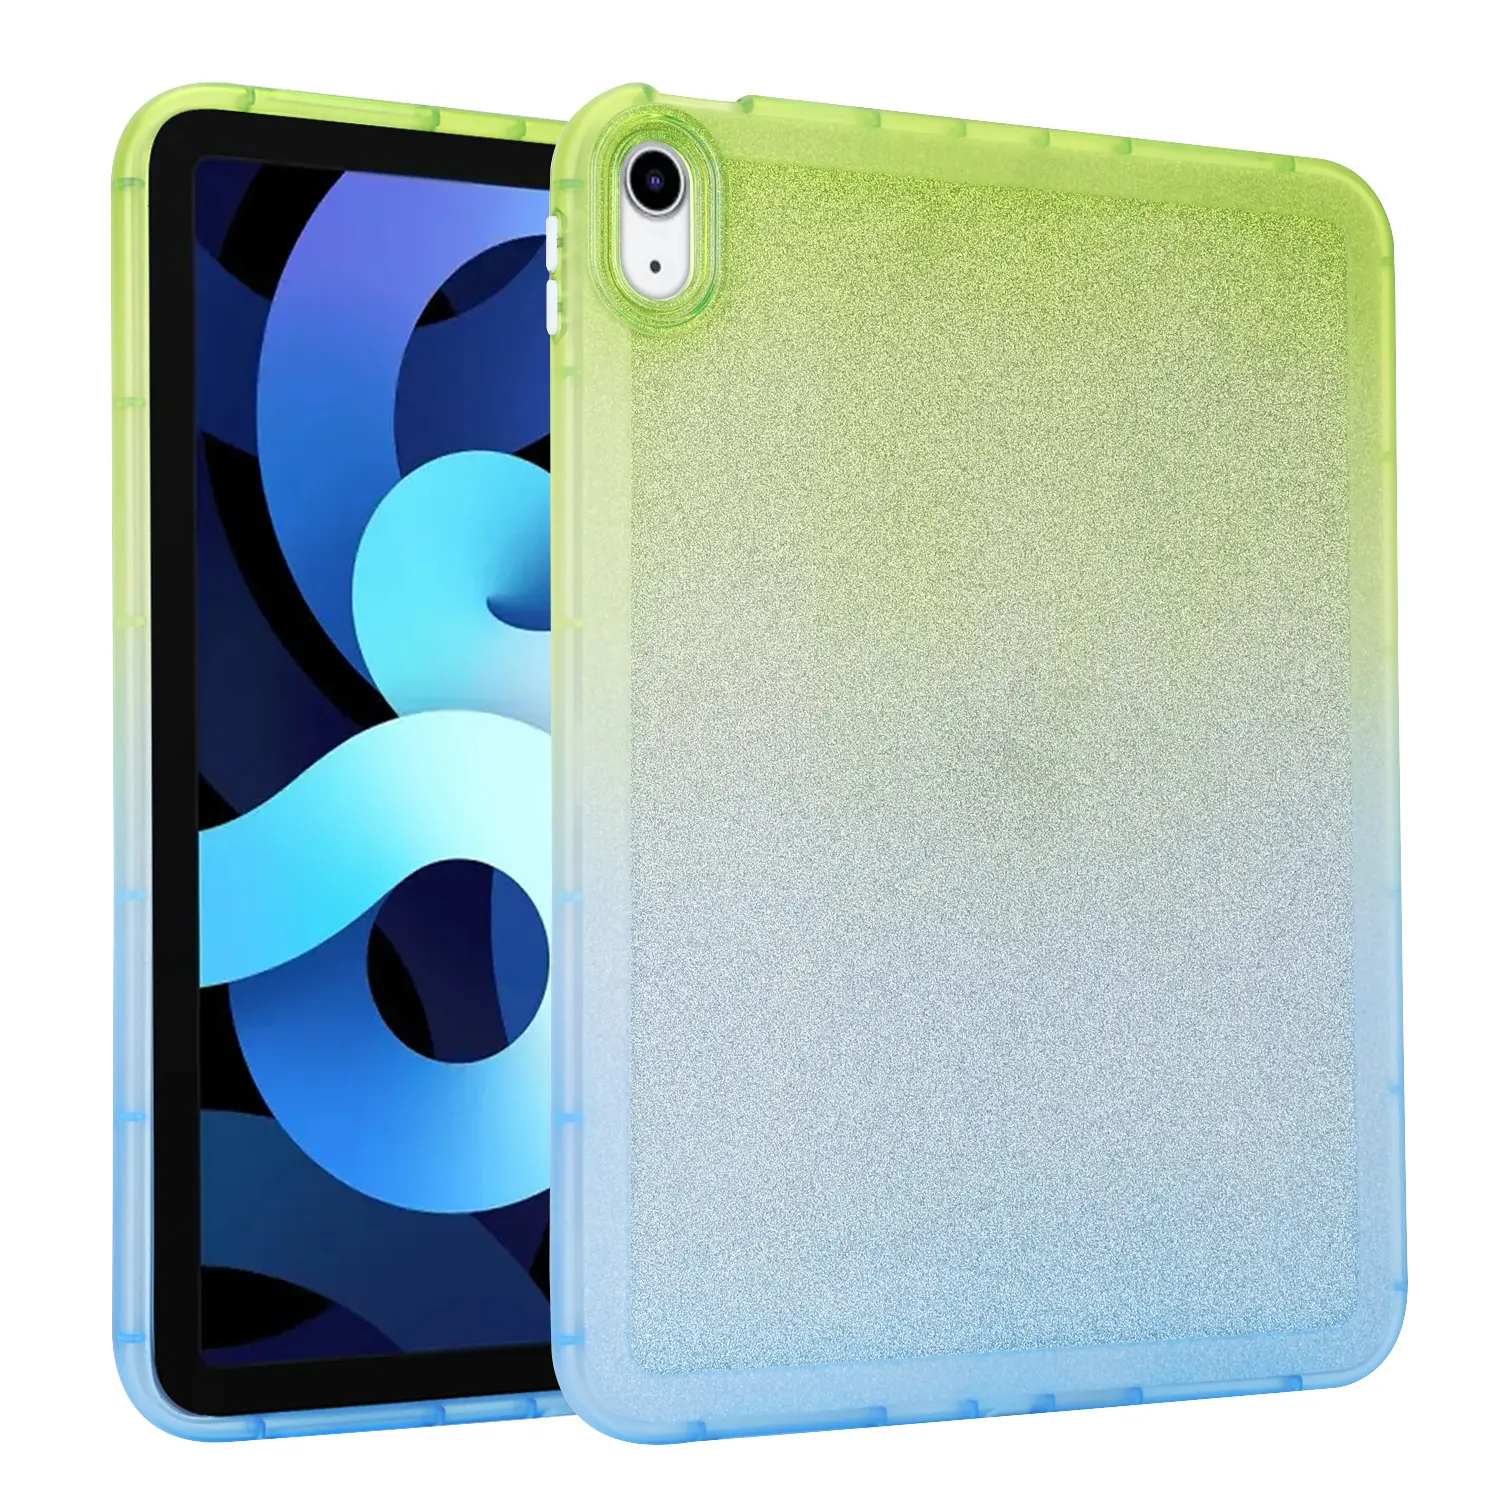 Custodia di lusso in carta glitterata per iPad Pro 12.9 custodia protettiva antiurto per Tablet arcobaleno a colori sfumati per iPad 10 mini 6